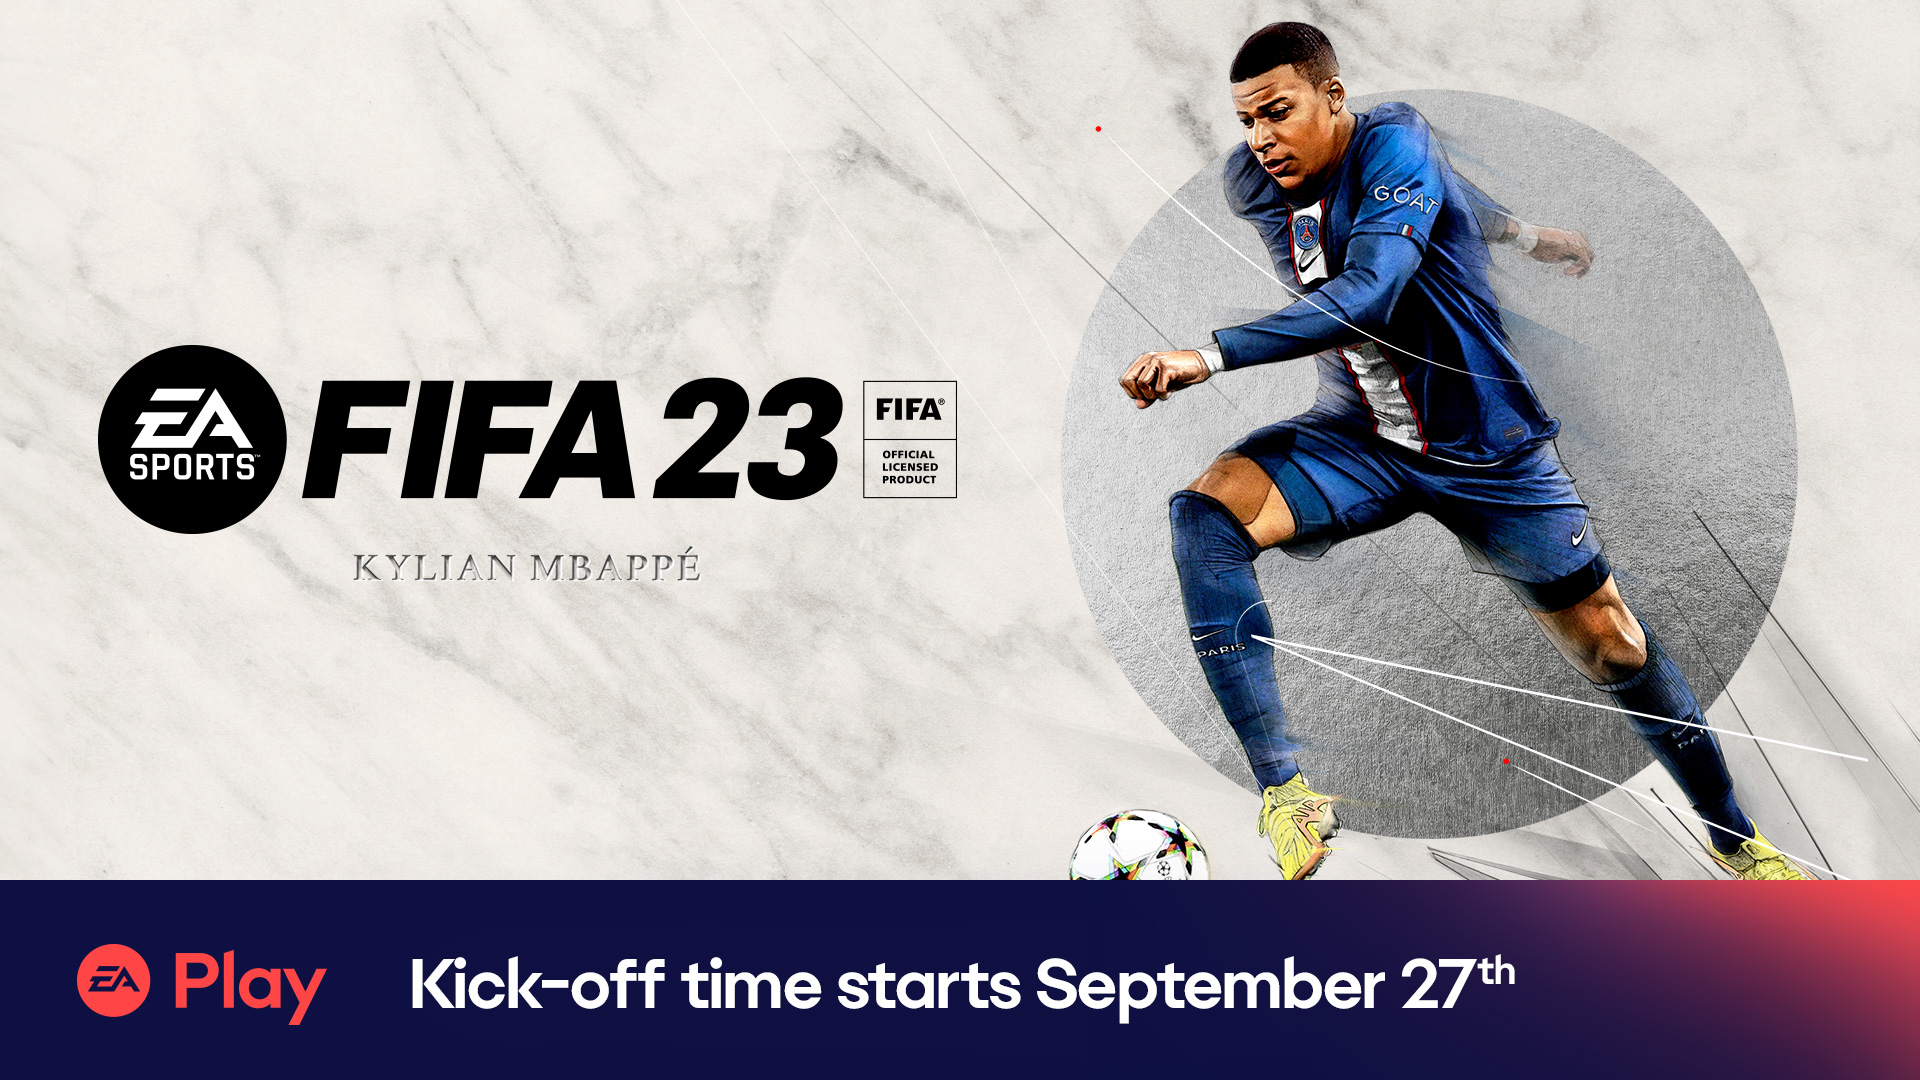 EA Play - FIFA 23 Early Access